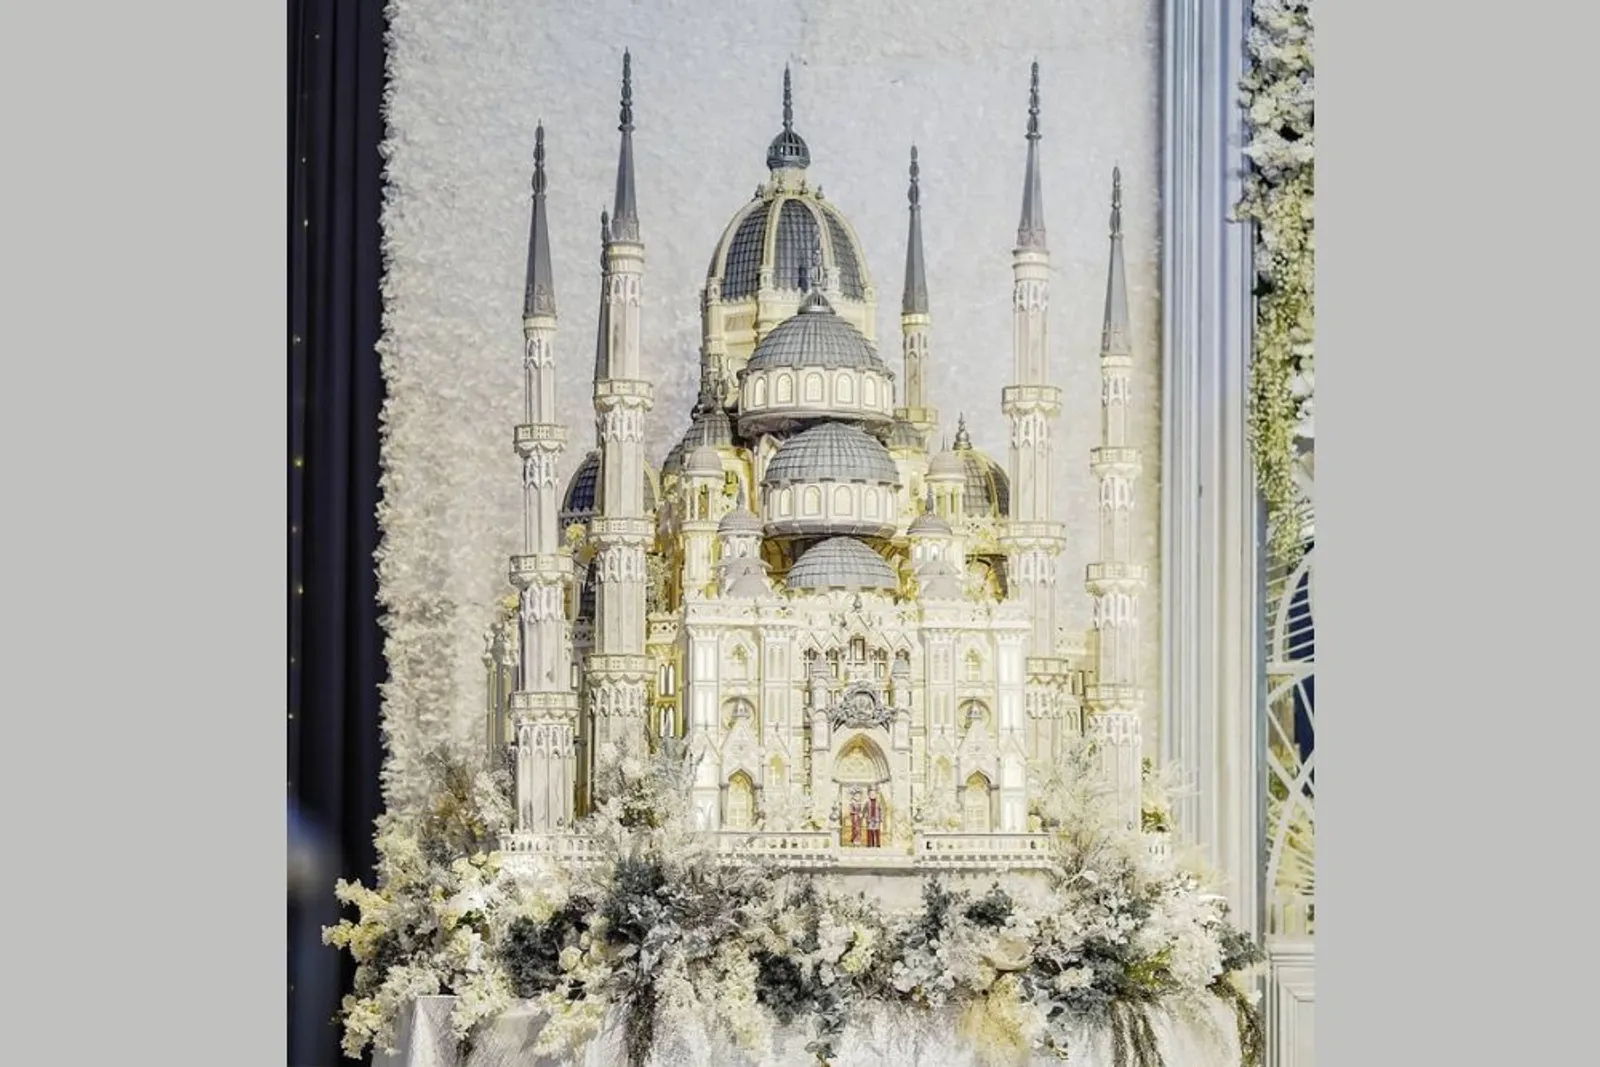 8 Kue Pernikahan Mewah Para Artis Indonesia, Bentuknya Istana Megah